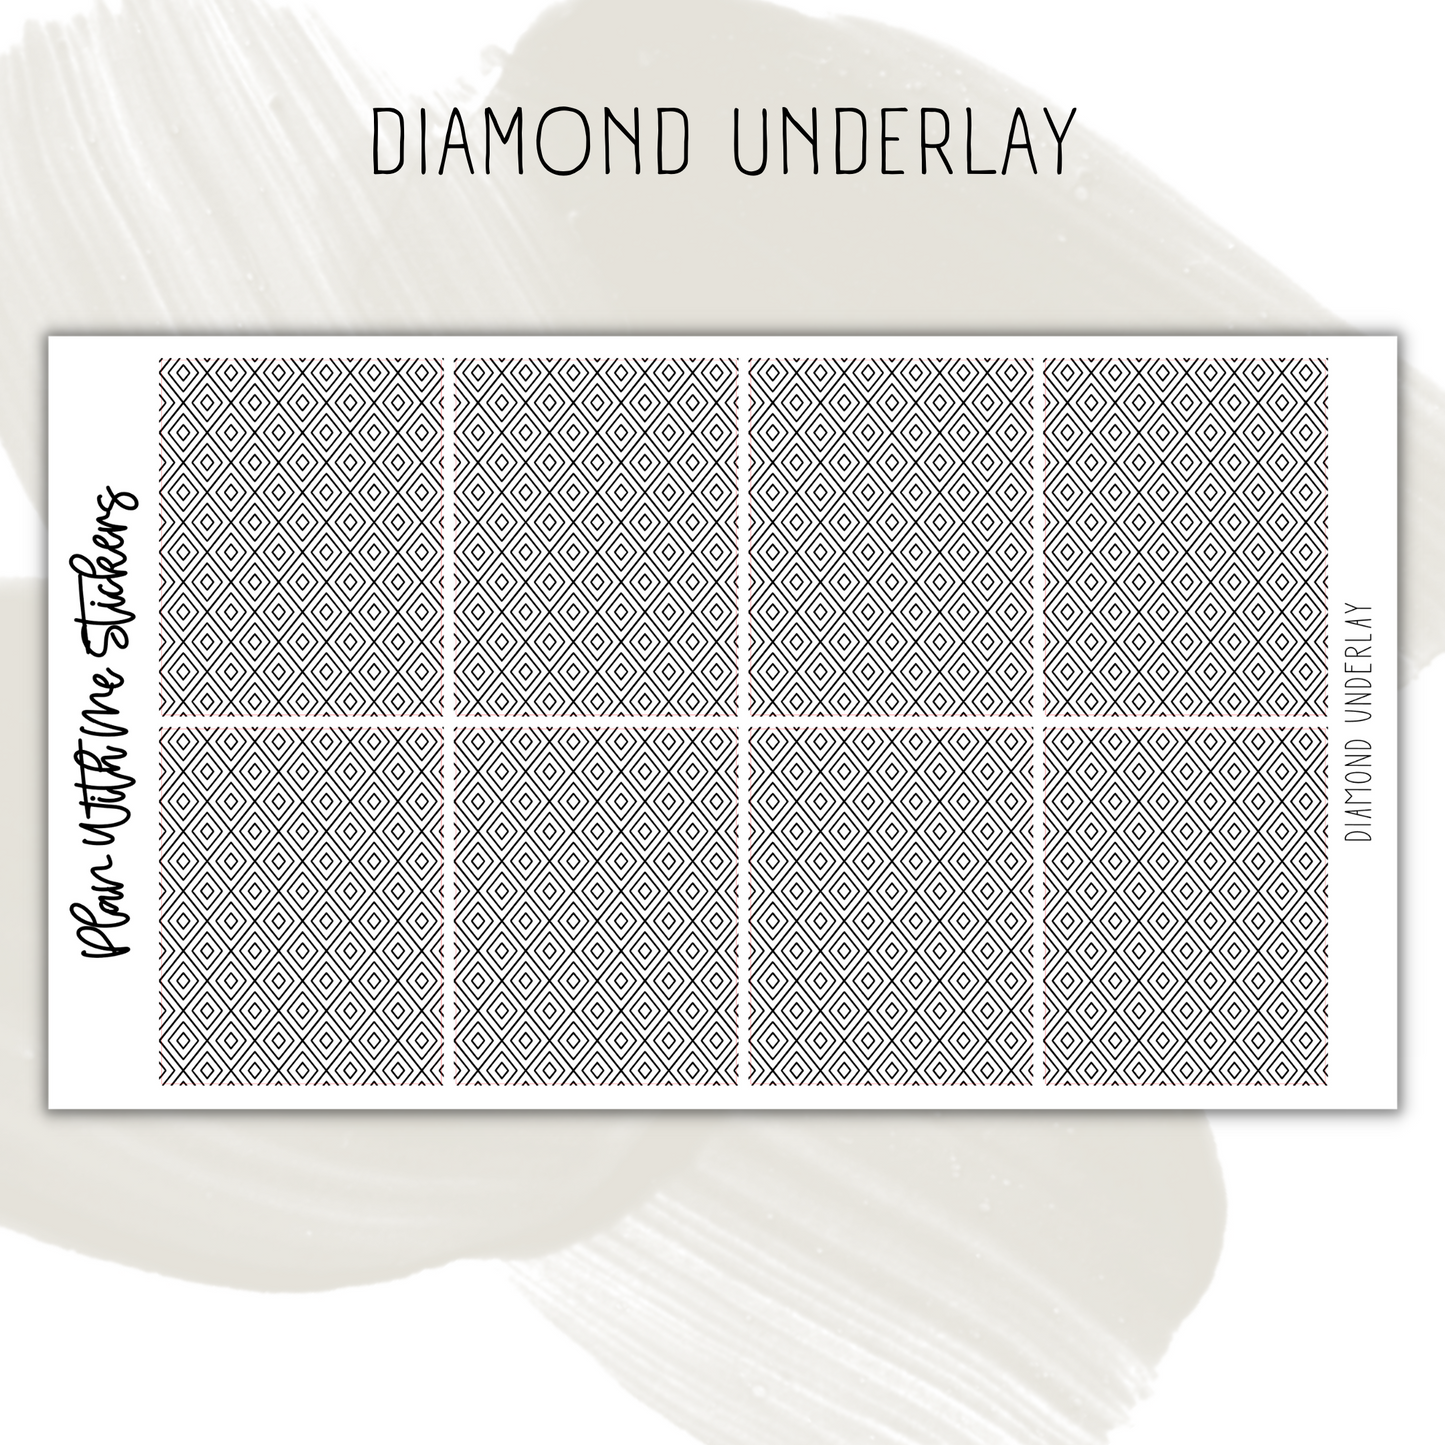 Diamond Underlay